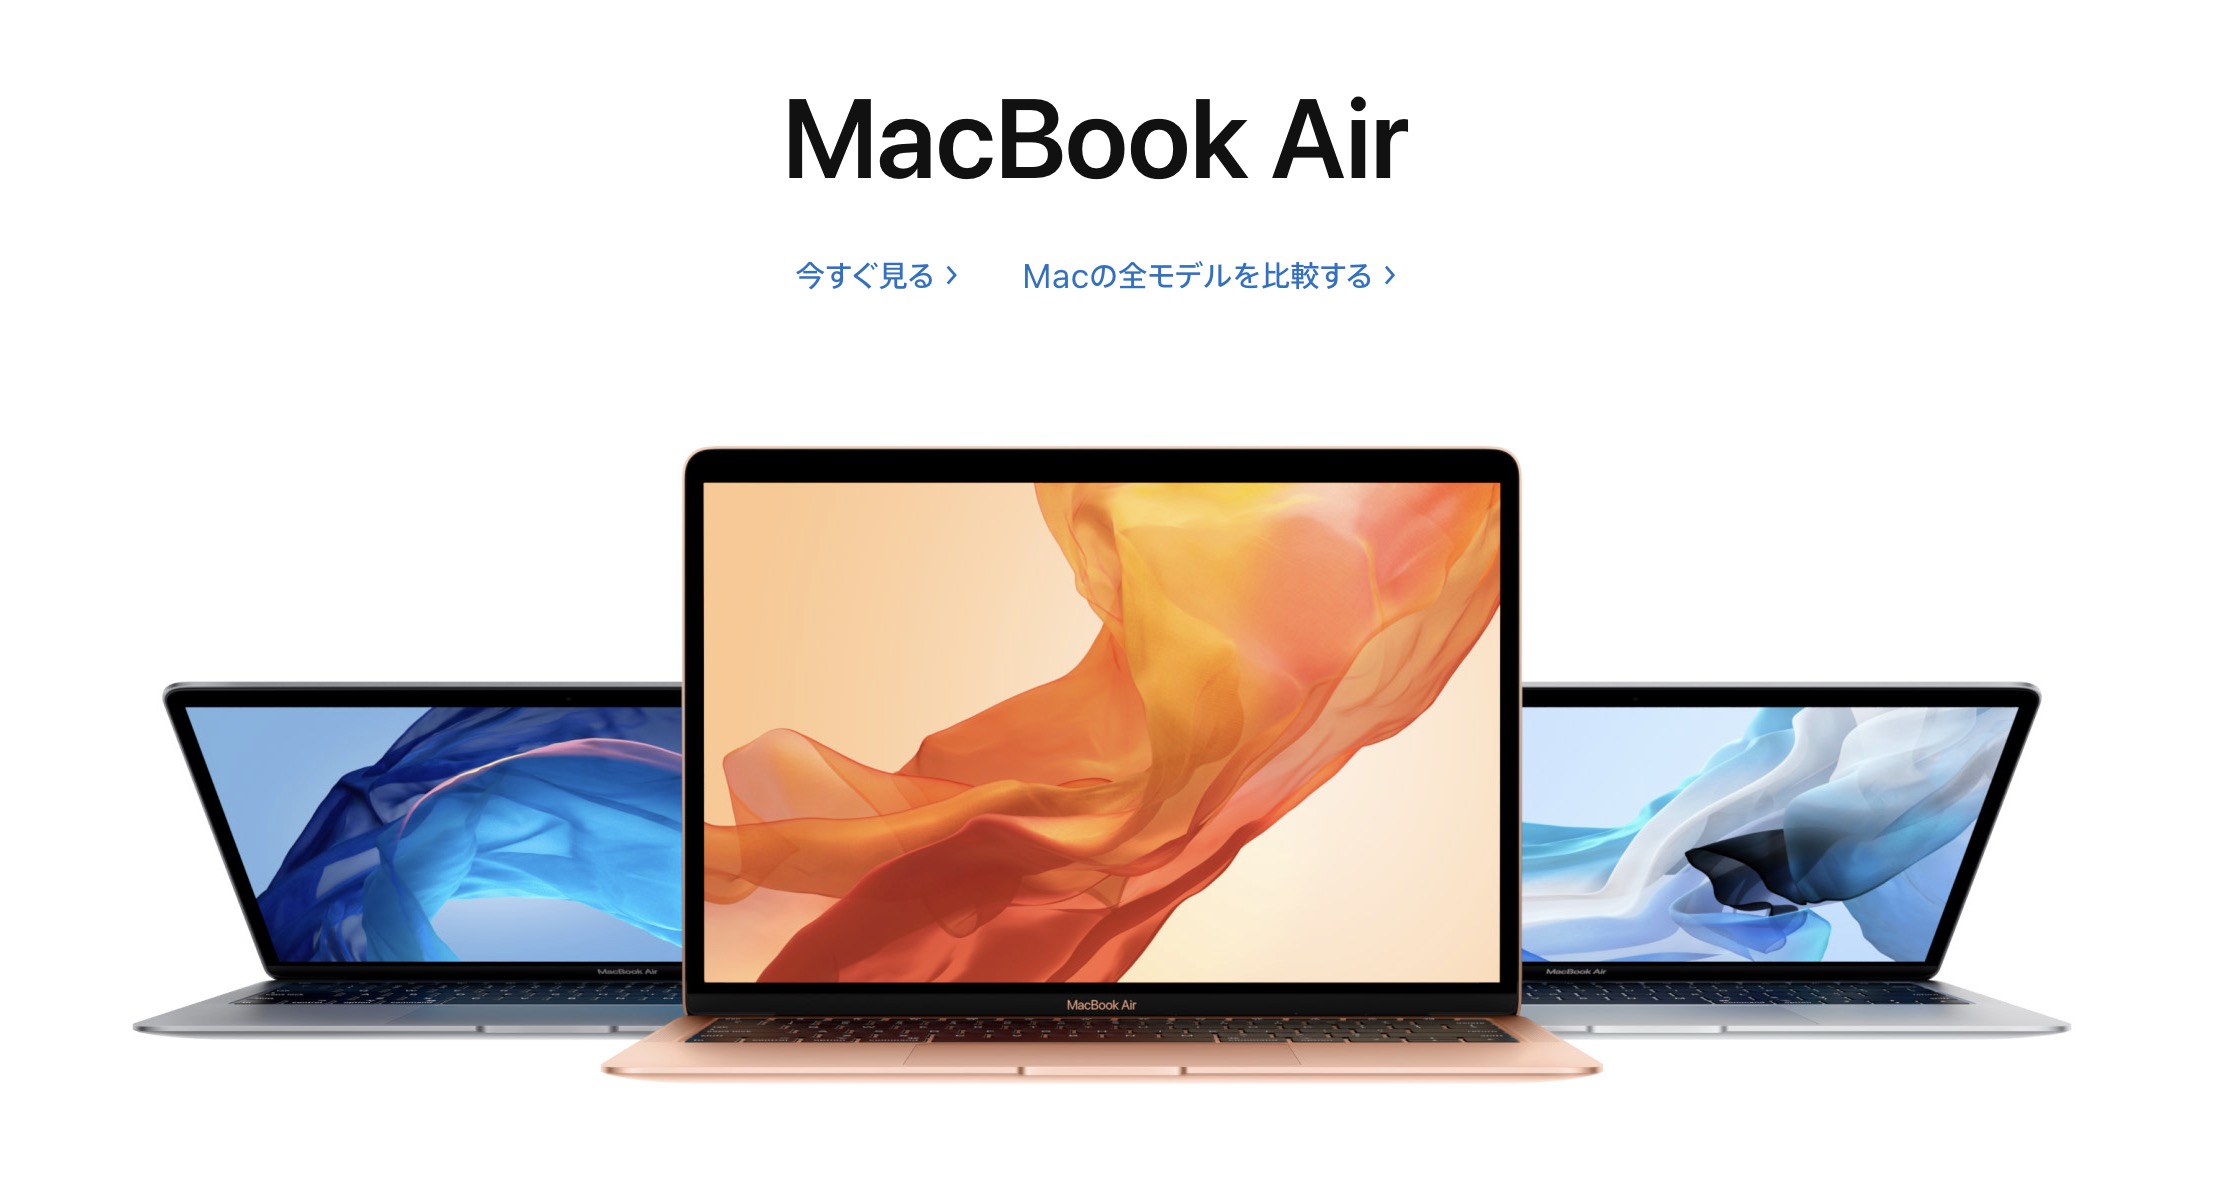 Macbook Air 2018